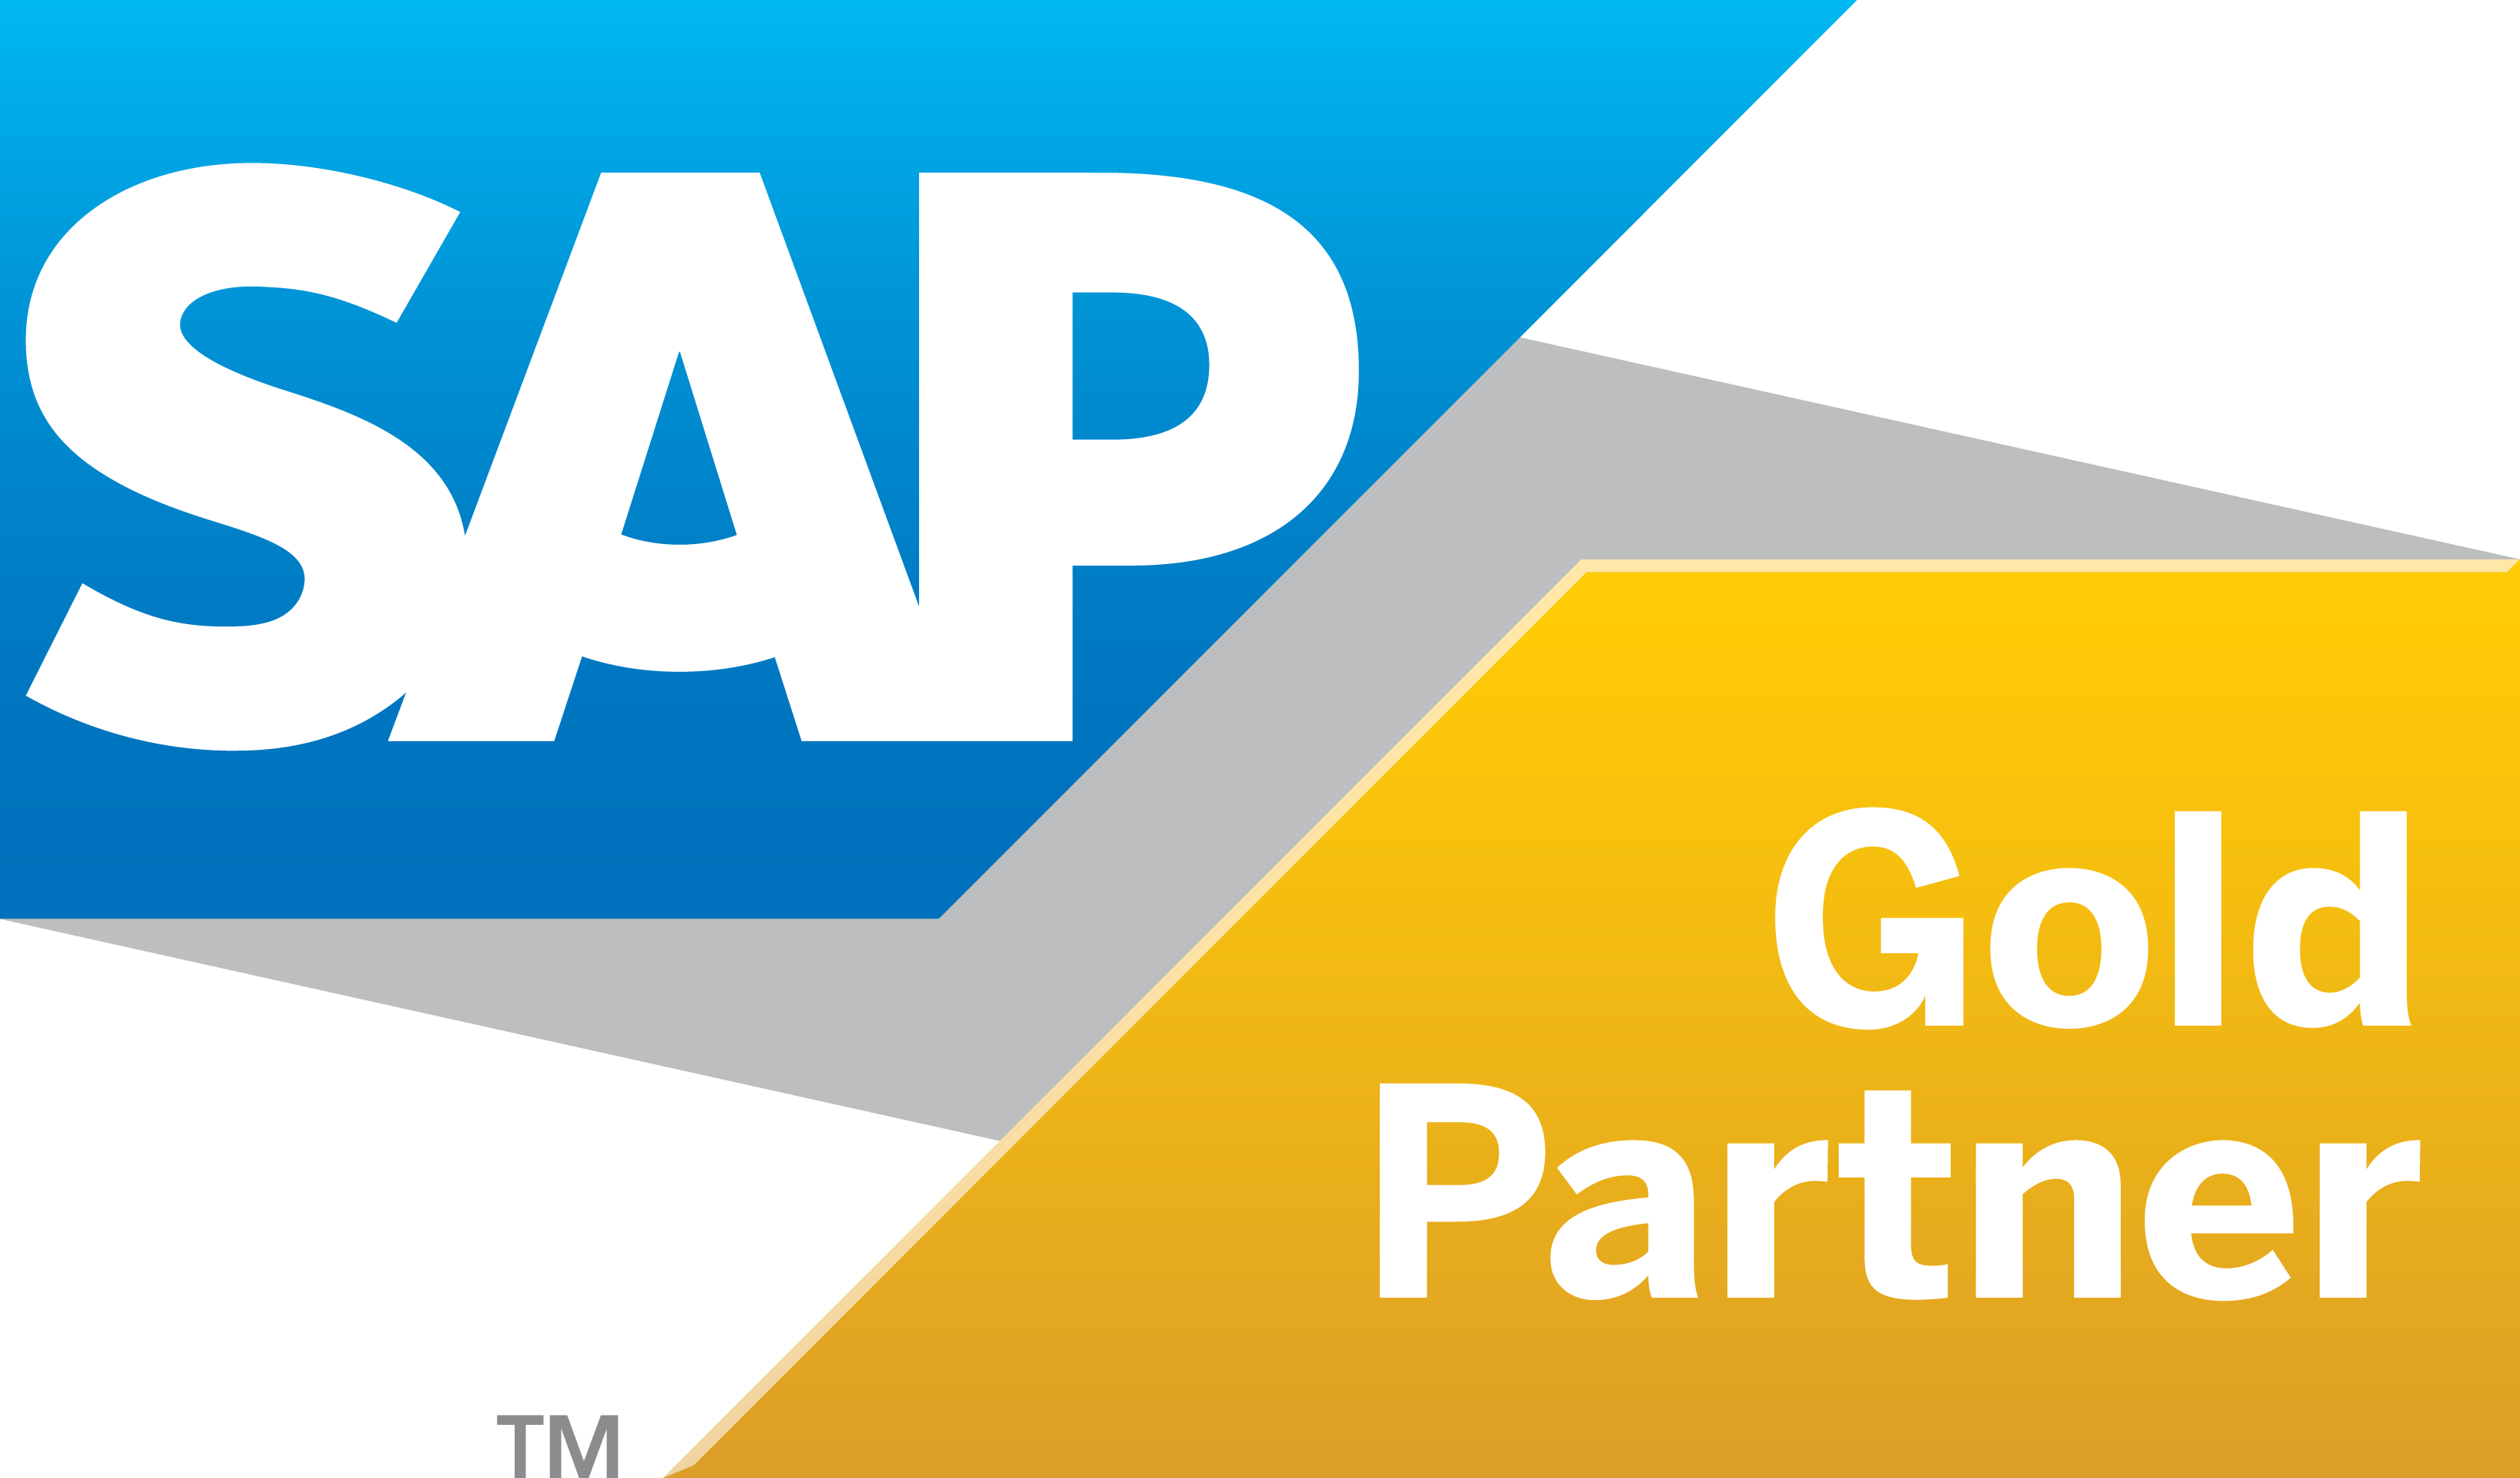 sap-gold-partner-logo